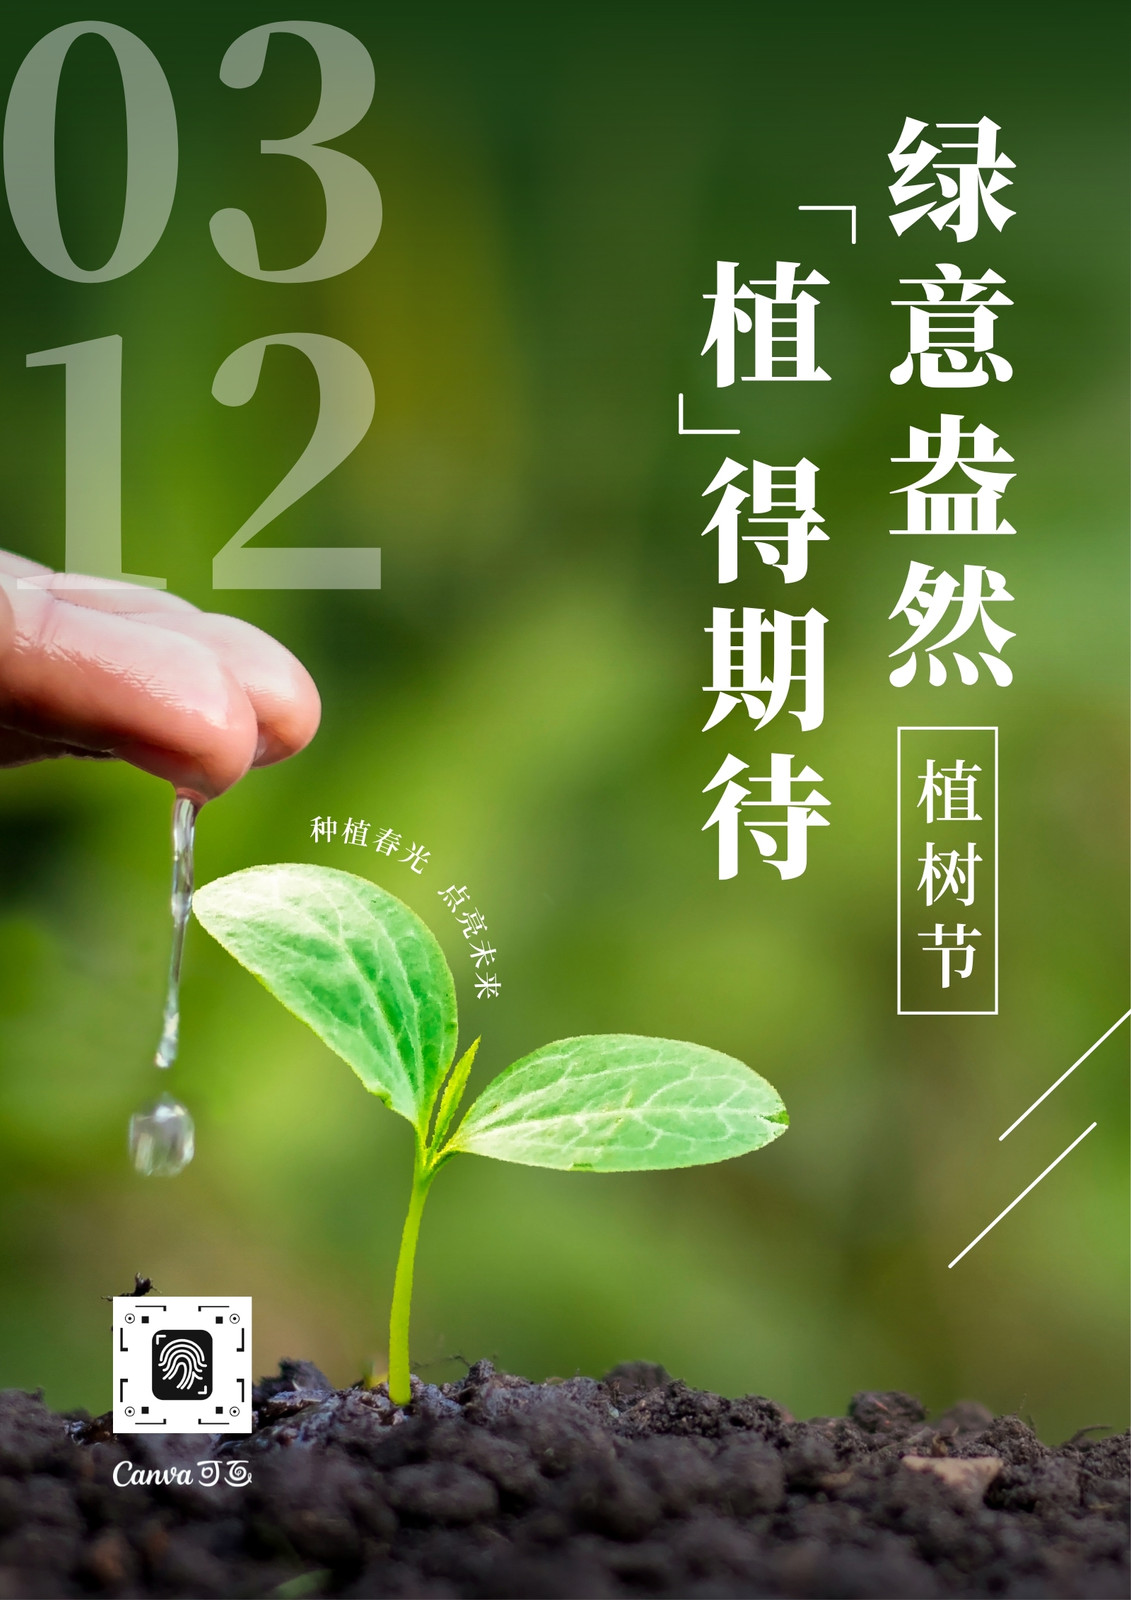 绿色植物发芽土壤摄影特写照片植树节节日宣传中文海报